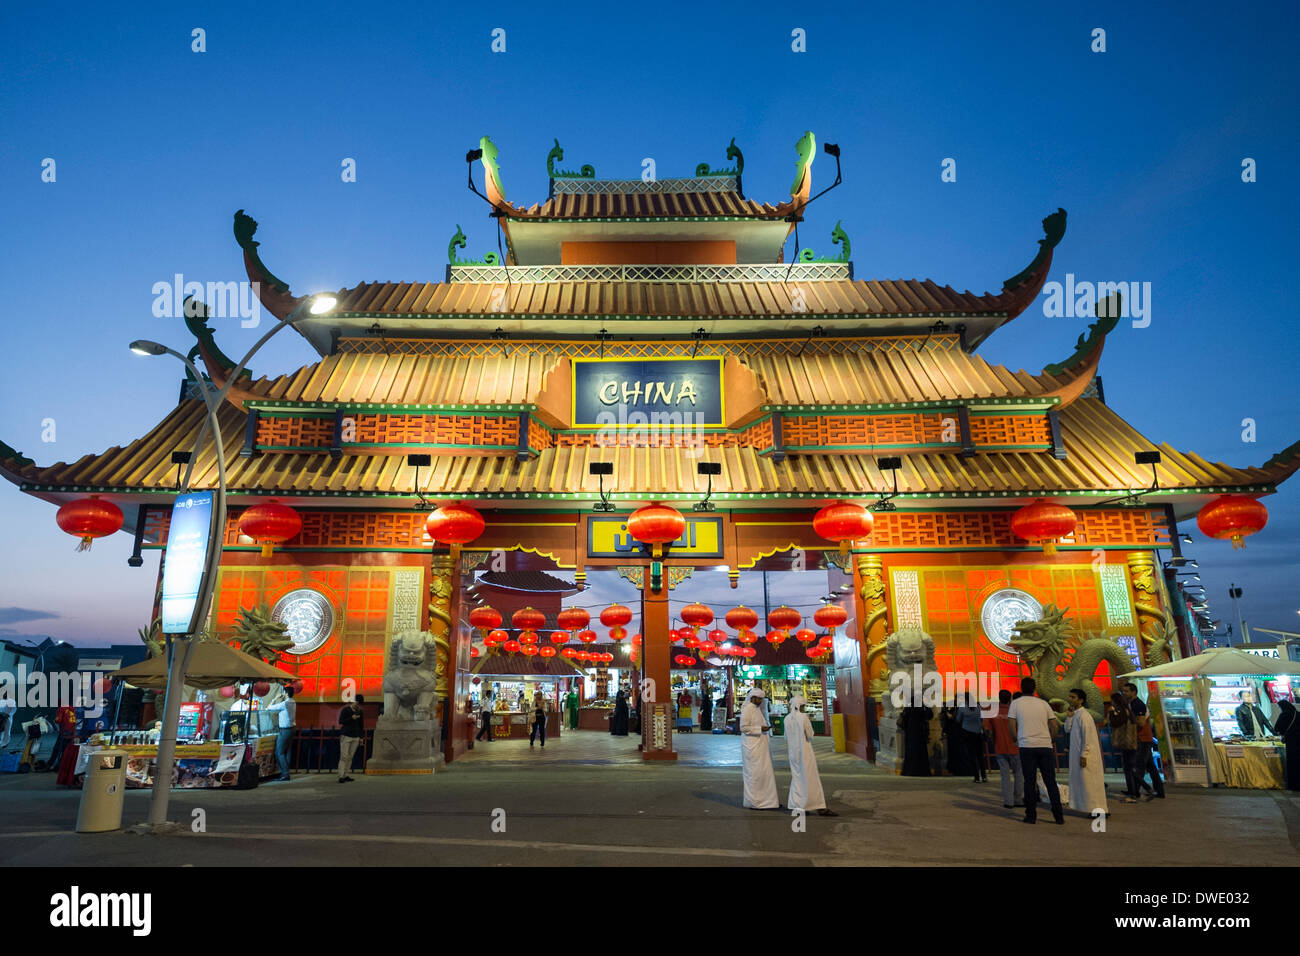 Porte d'entrée ornée de pavillon de la Chine au Village Global tourist attraction culturelle au Dubaï Émirats Arabes Unis Banque D'Images